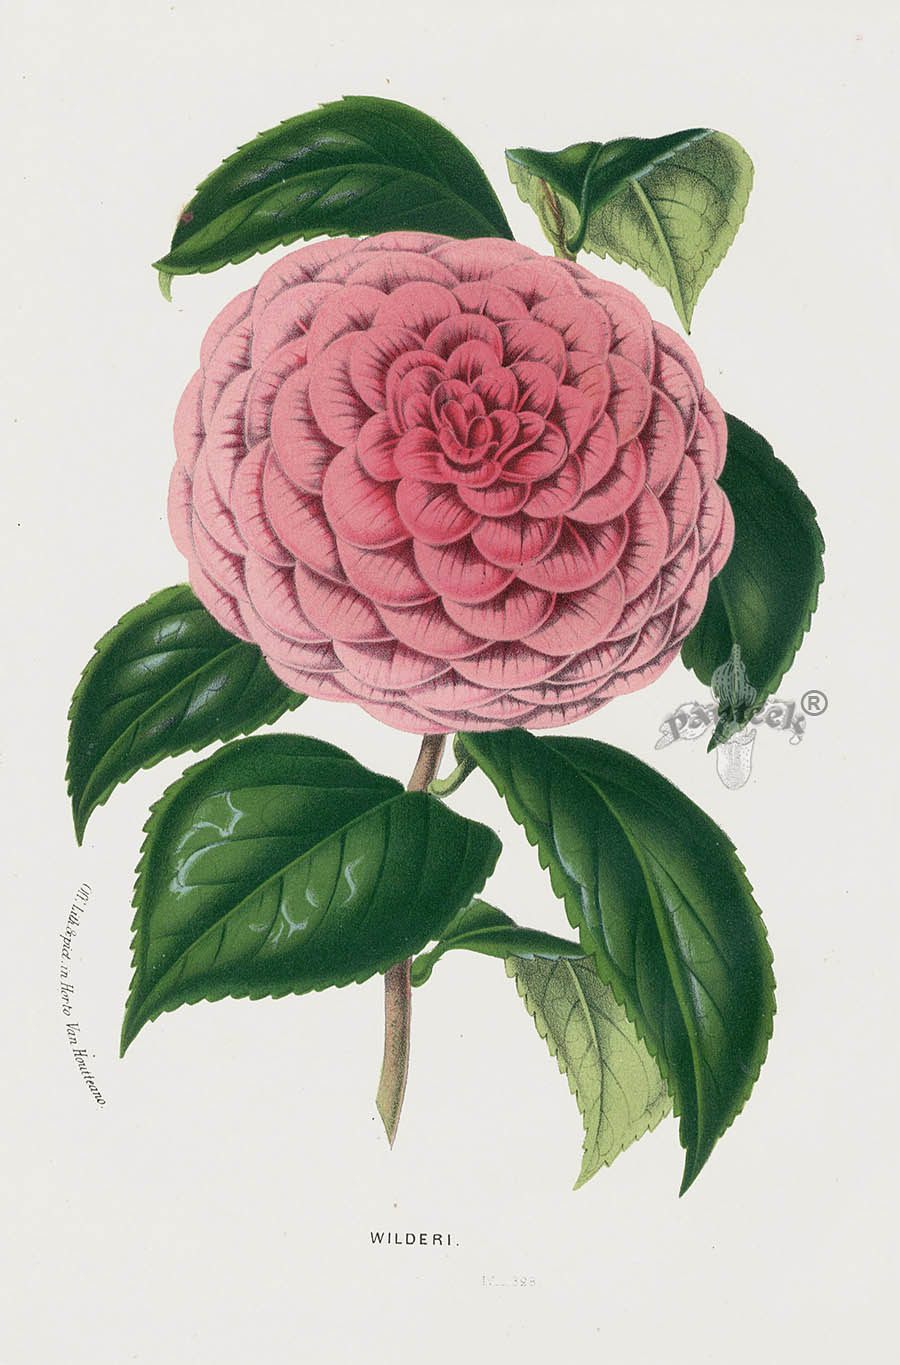 1845 Charles Lemaire Flore des Serres et des Jardin Camellia Prints